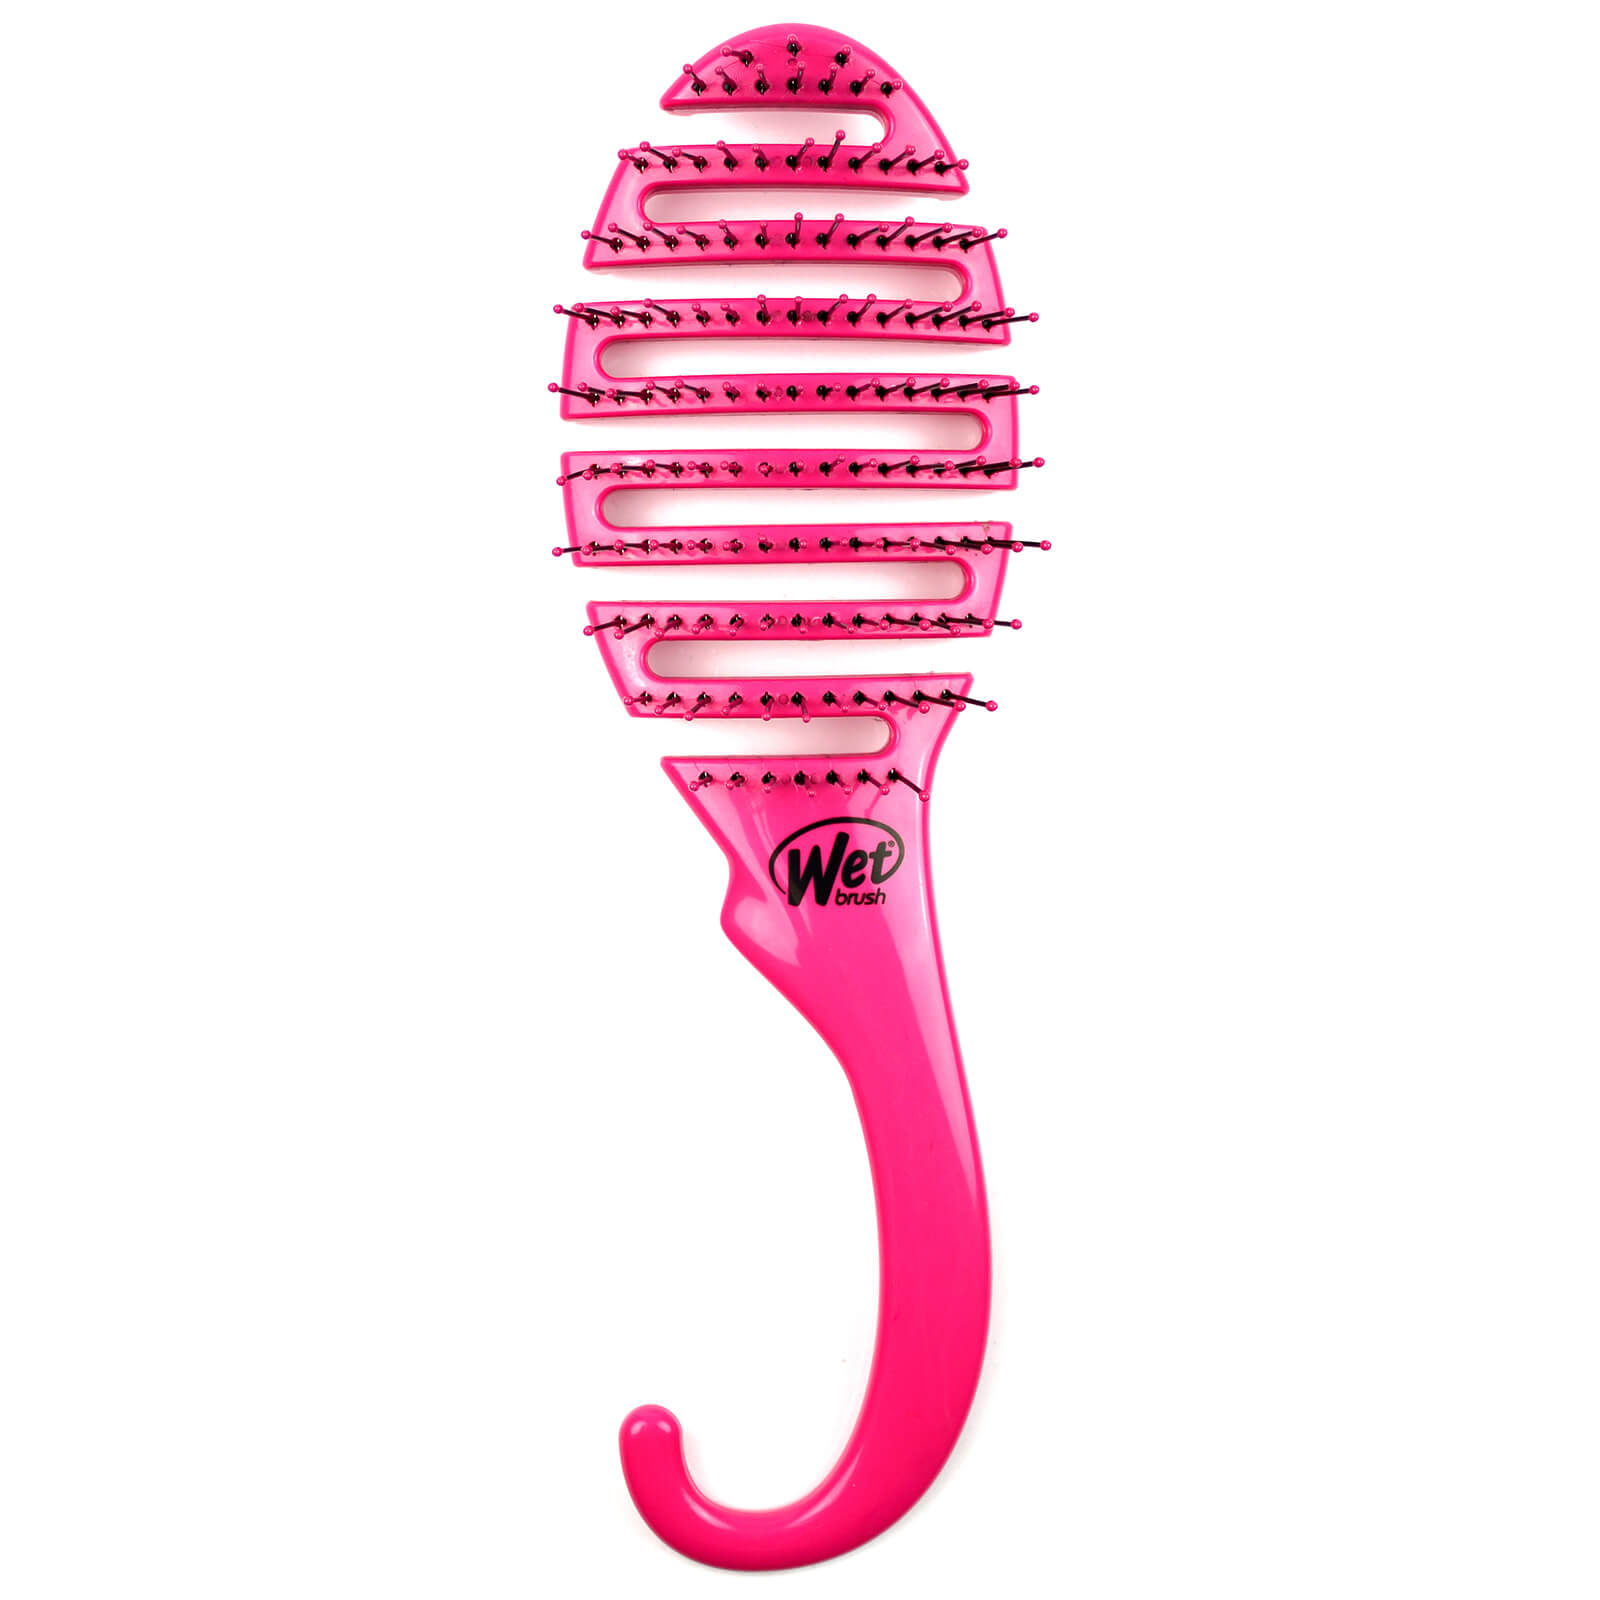 Cepillo de ducha para el cabello de WetBrush - Pink